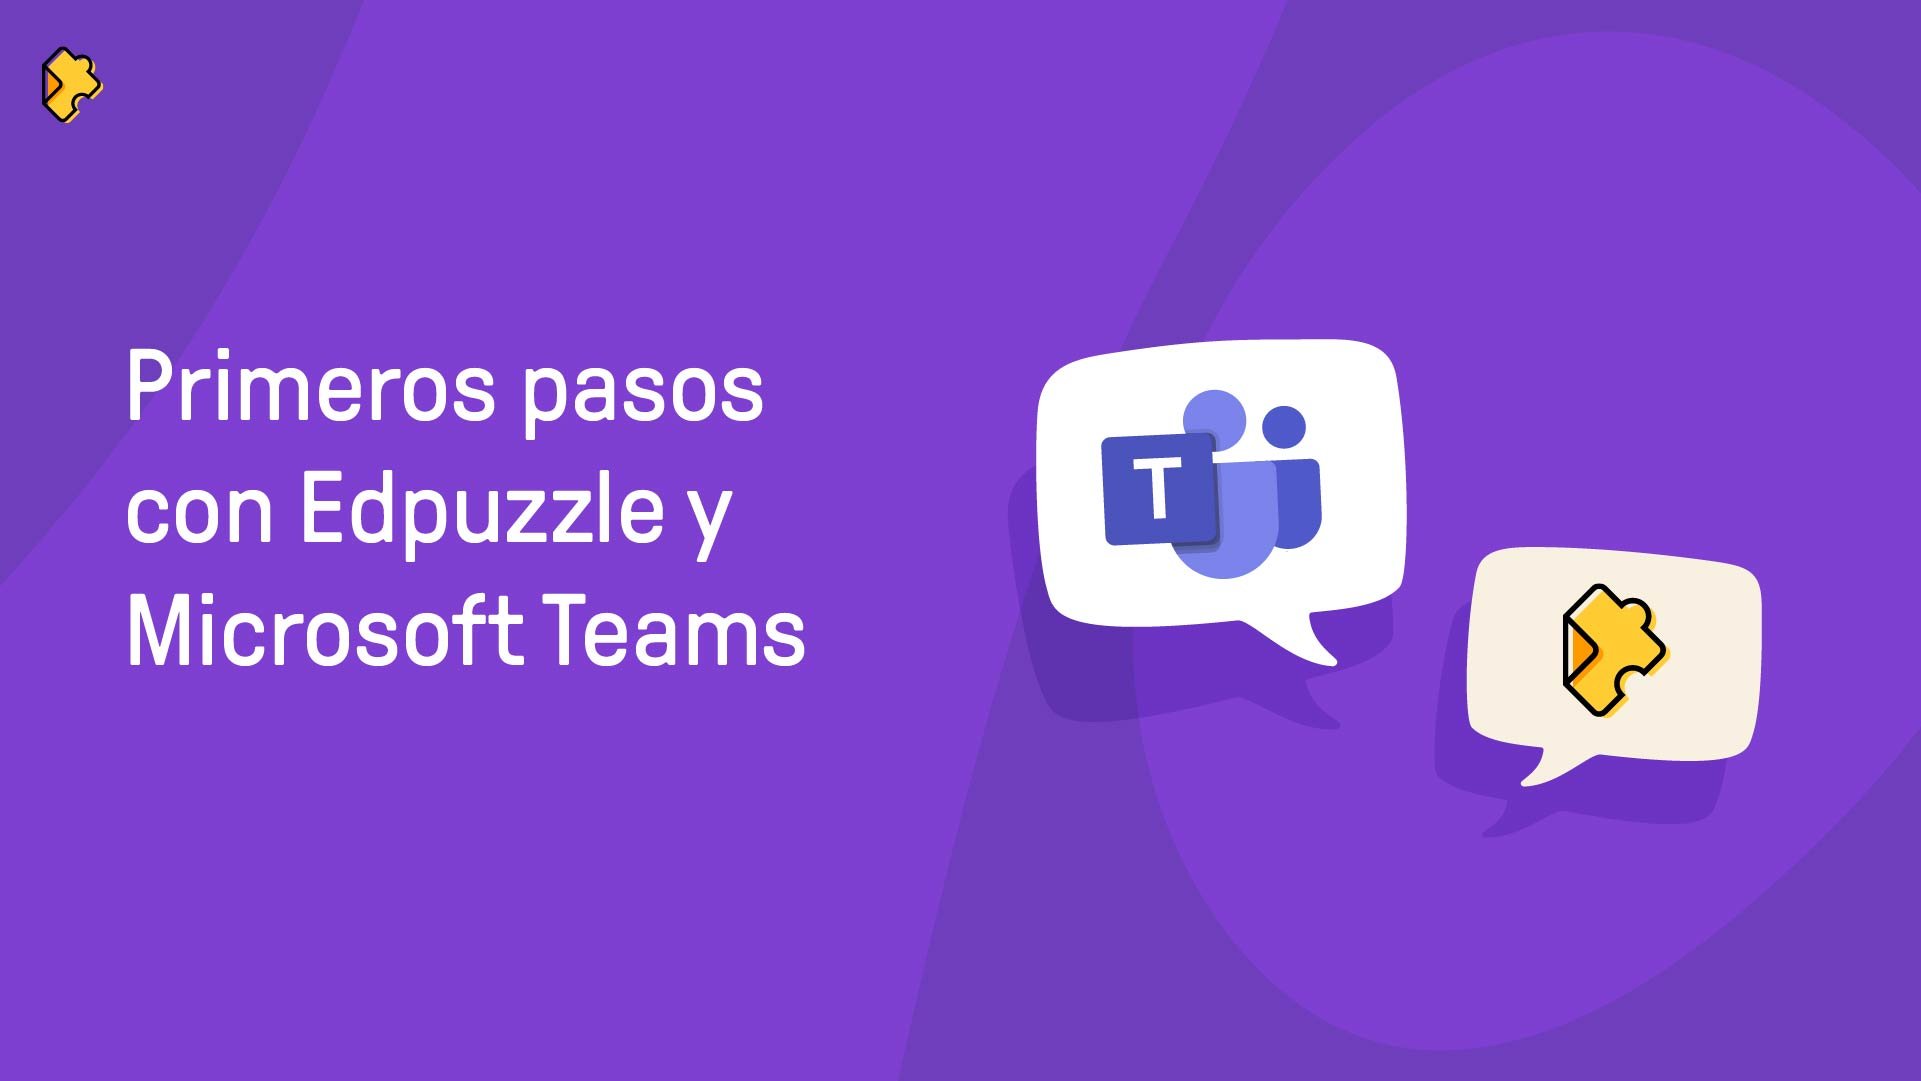 Primeros pasos con Edpuzzle y Microsoft Teams